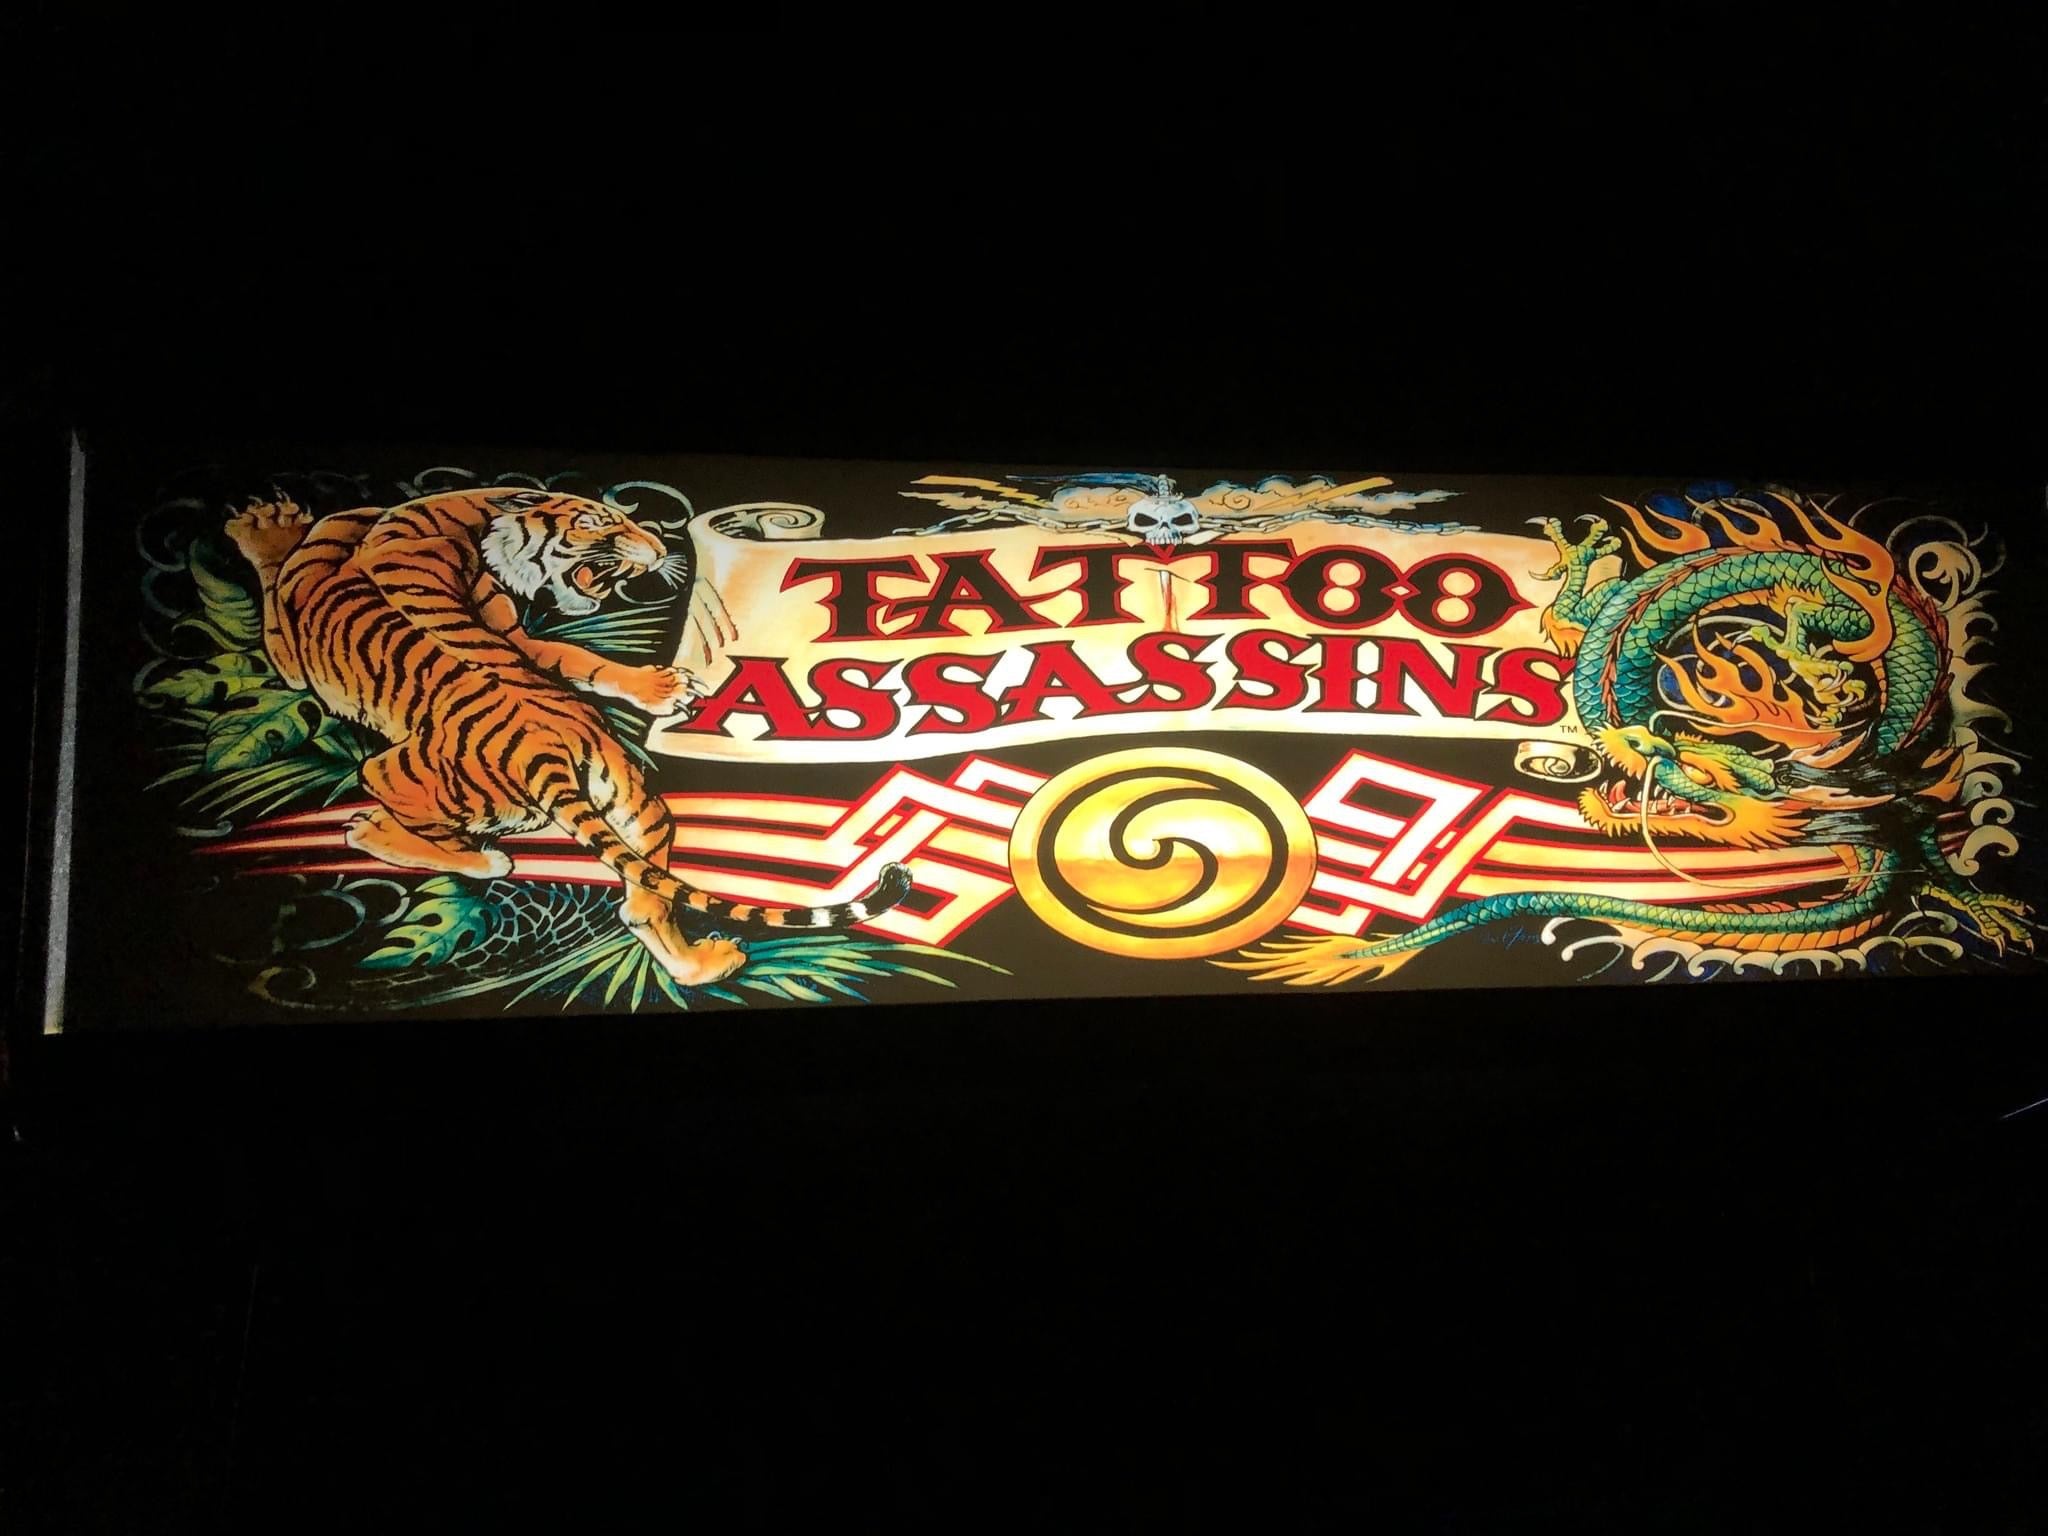 Tattoo Assassins Complete Art Kit